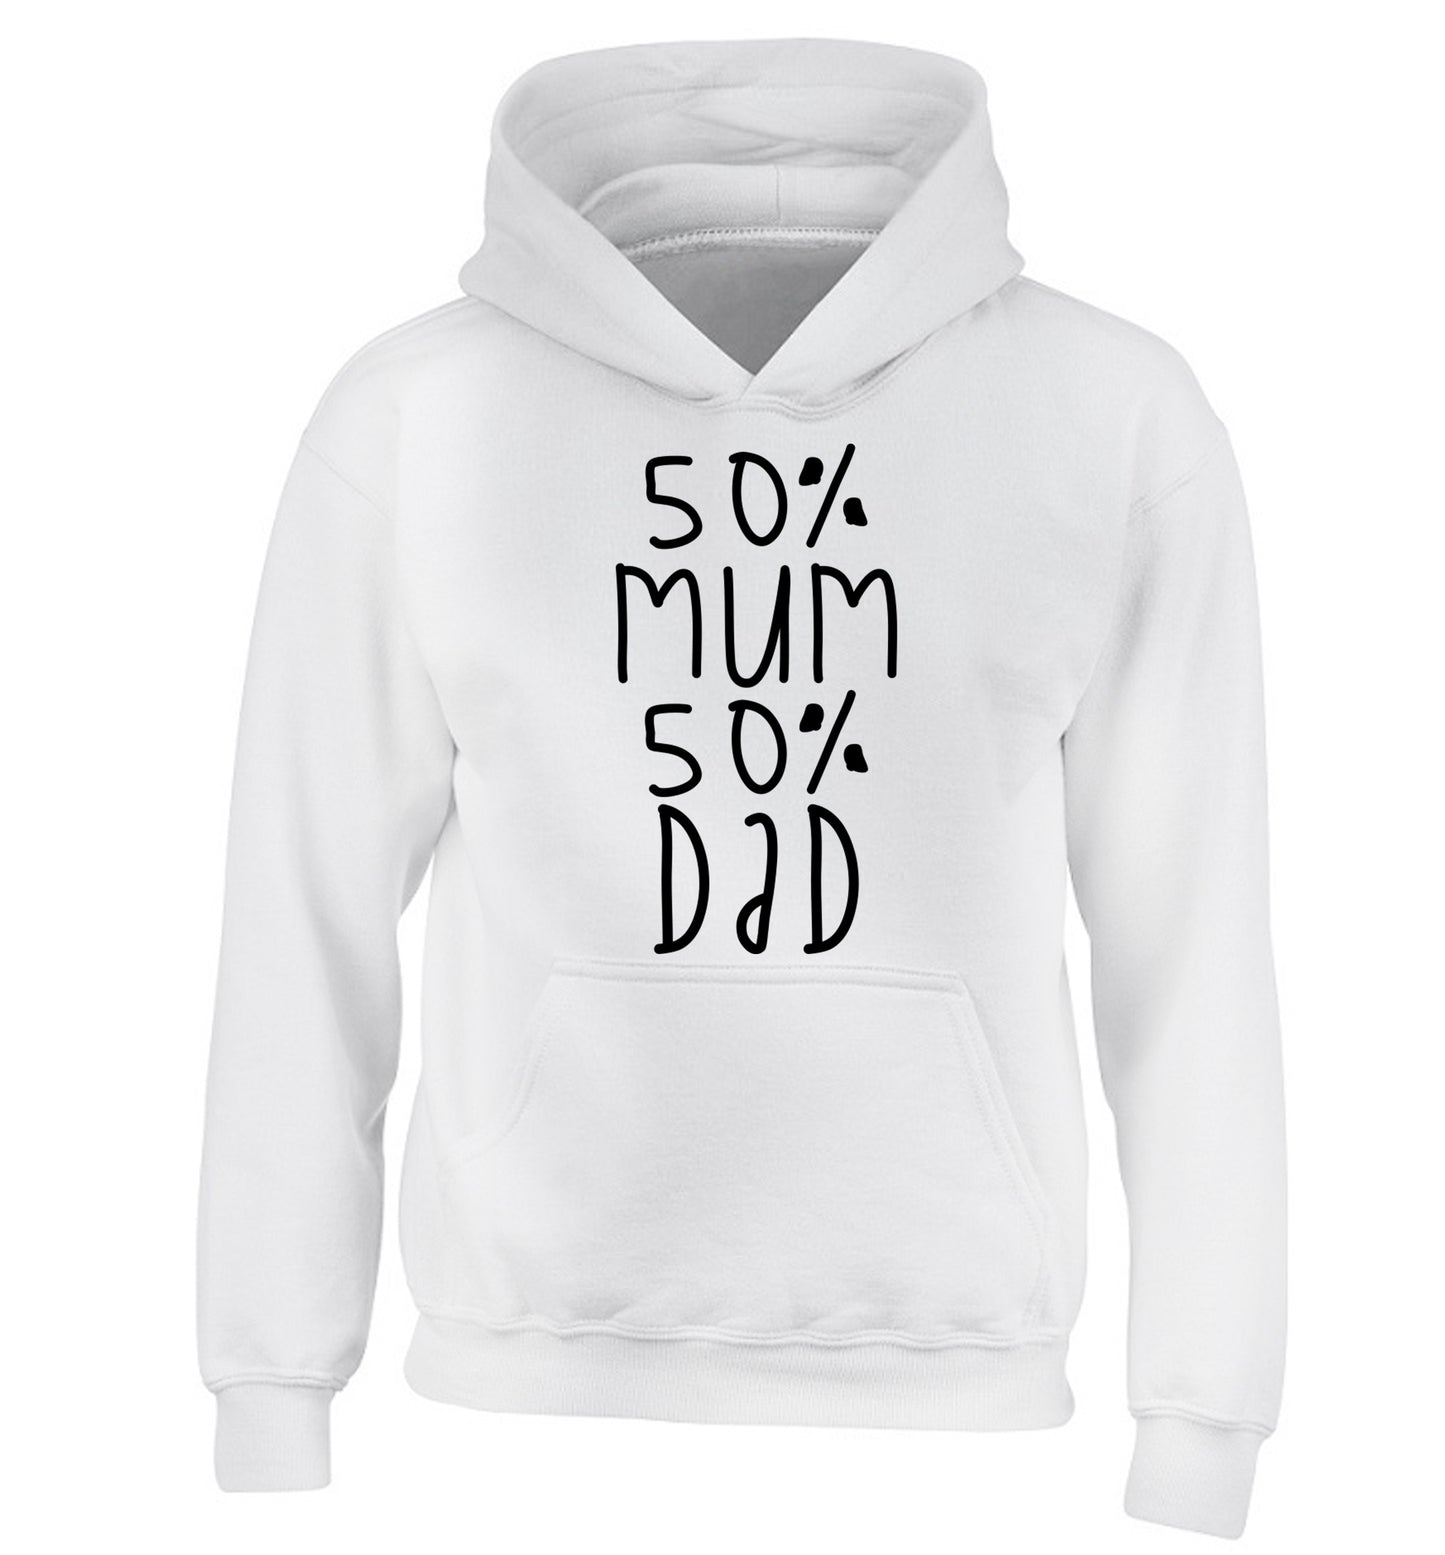 50% mum 50% dad children's white hoodie 12-14 Years